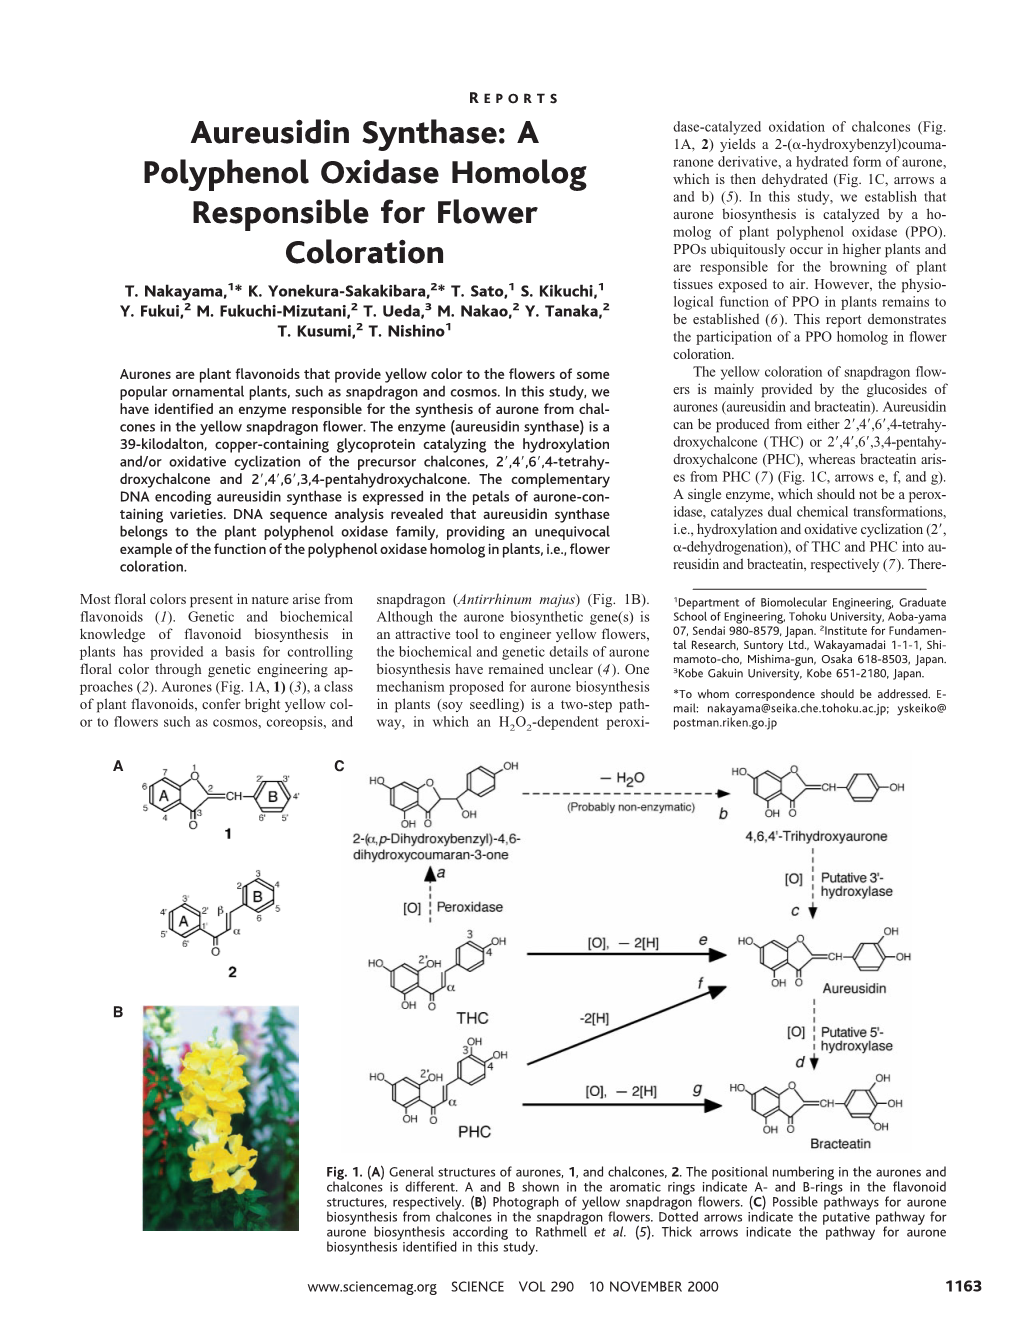 Aureusidin Synthase: a Polyphenol Oxidase Homolog Responsible For